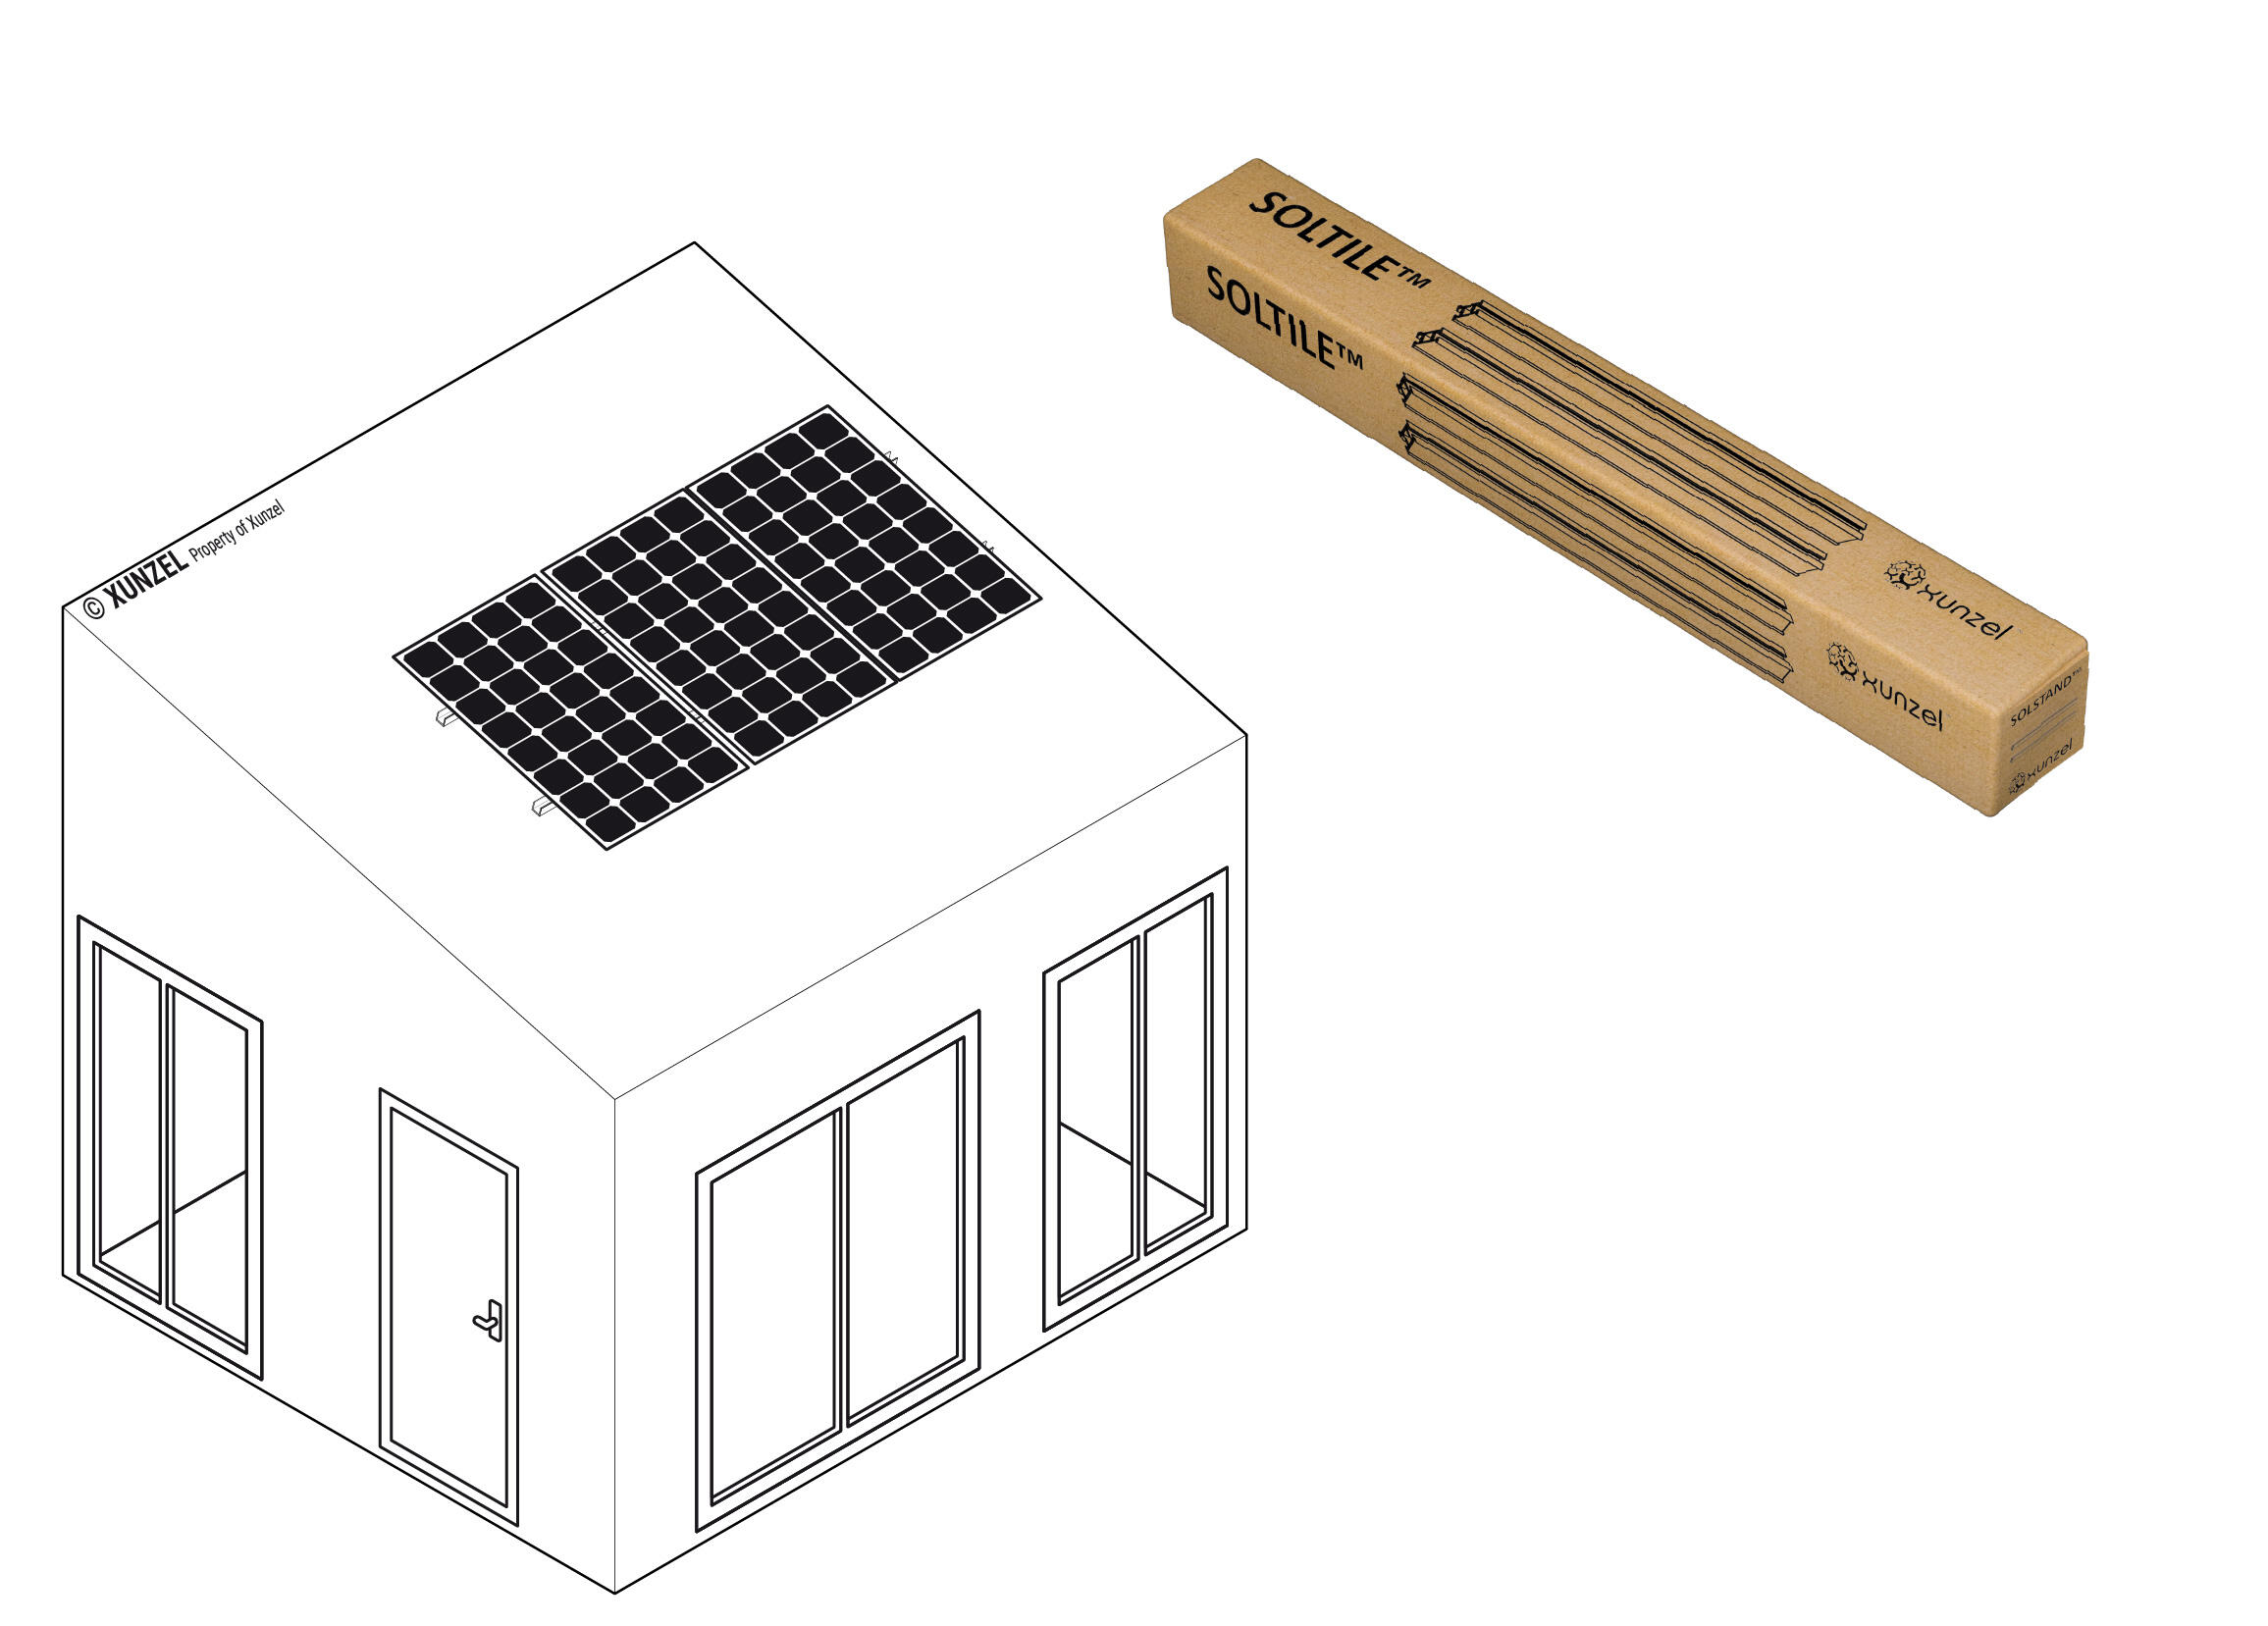 Soporte para tejado soltile-3xl para 3 paneles solarpower-425w